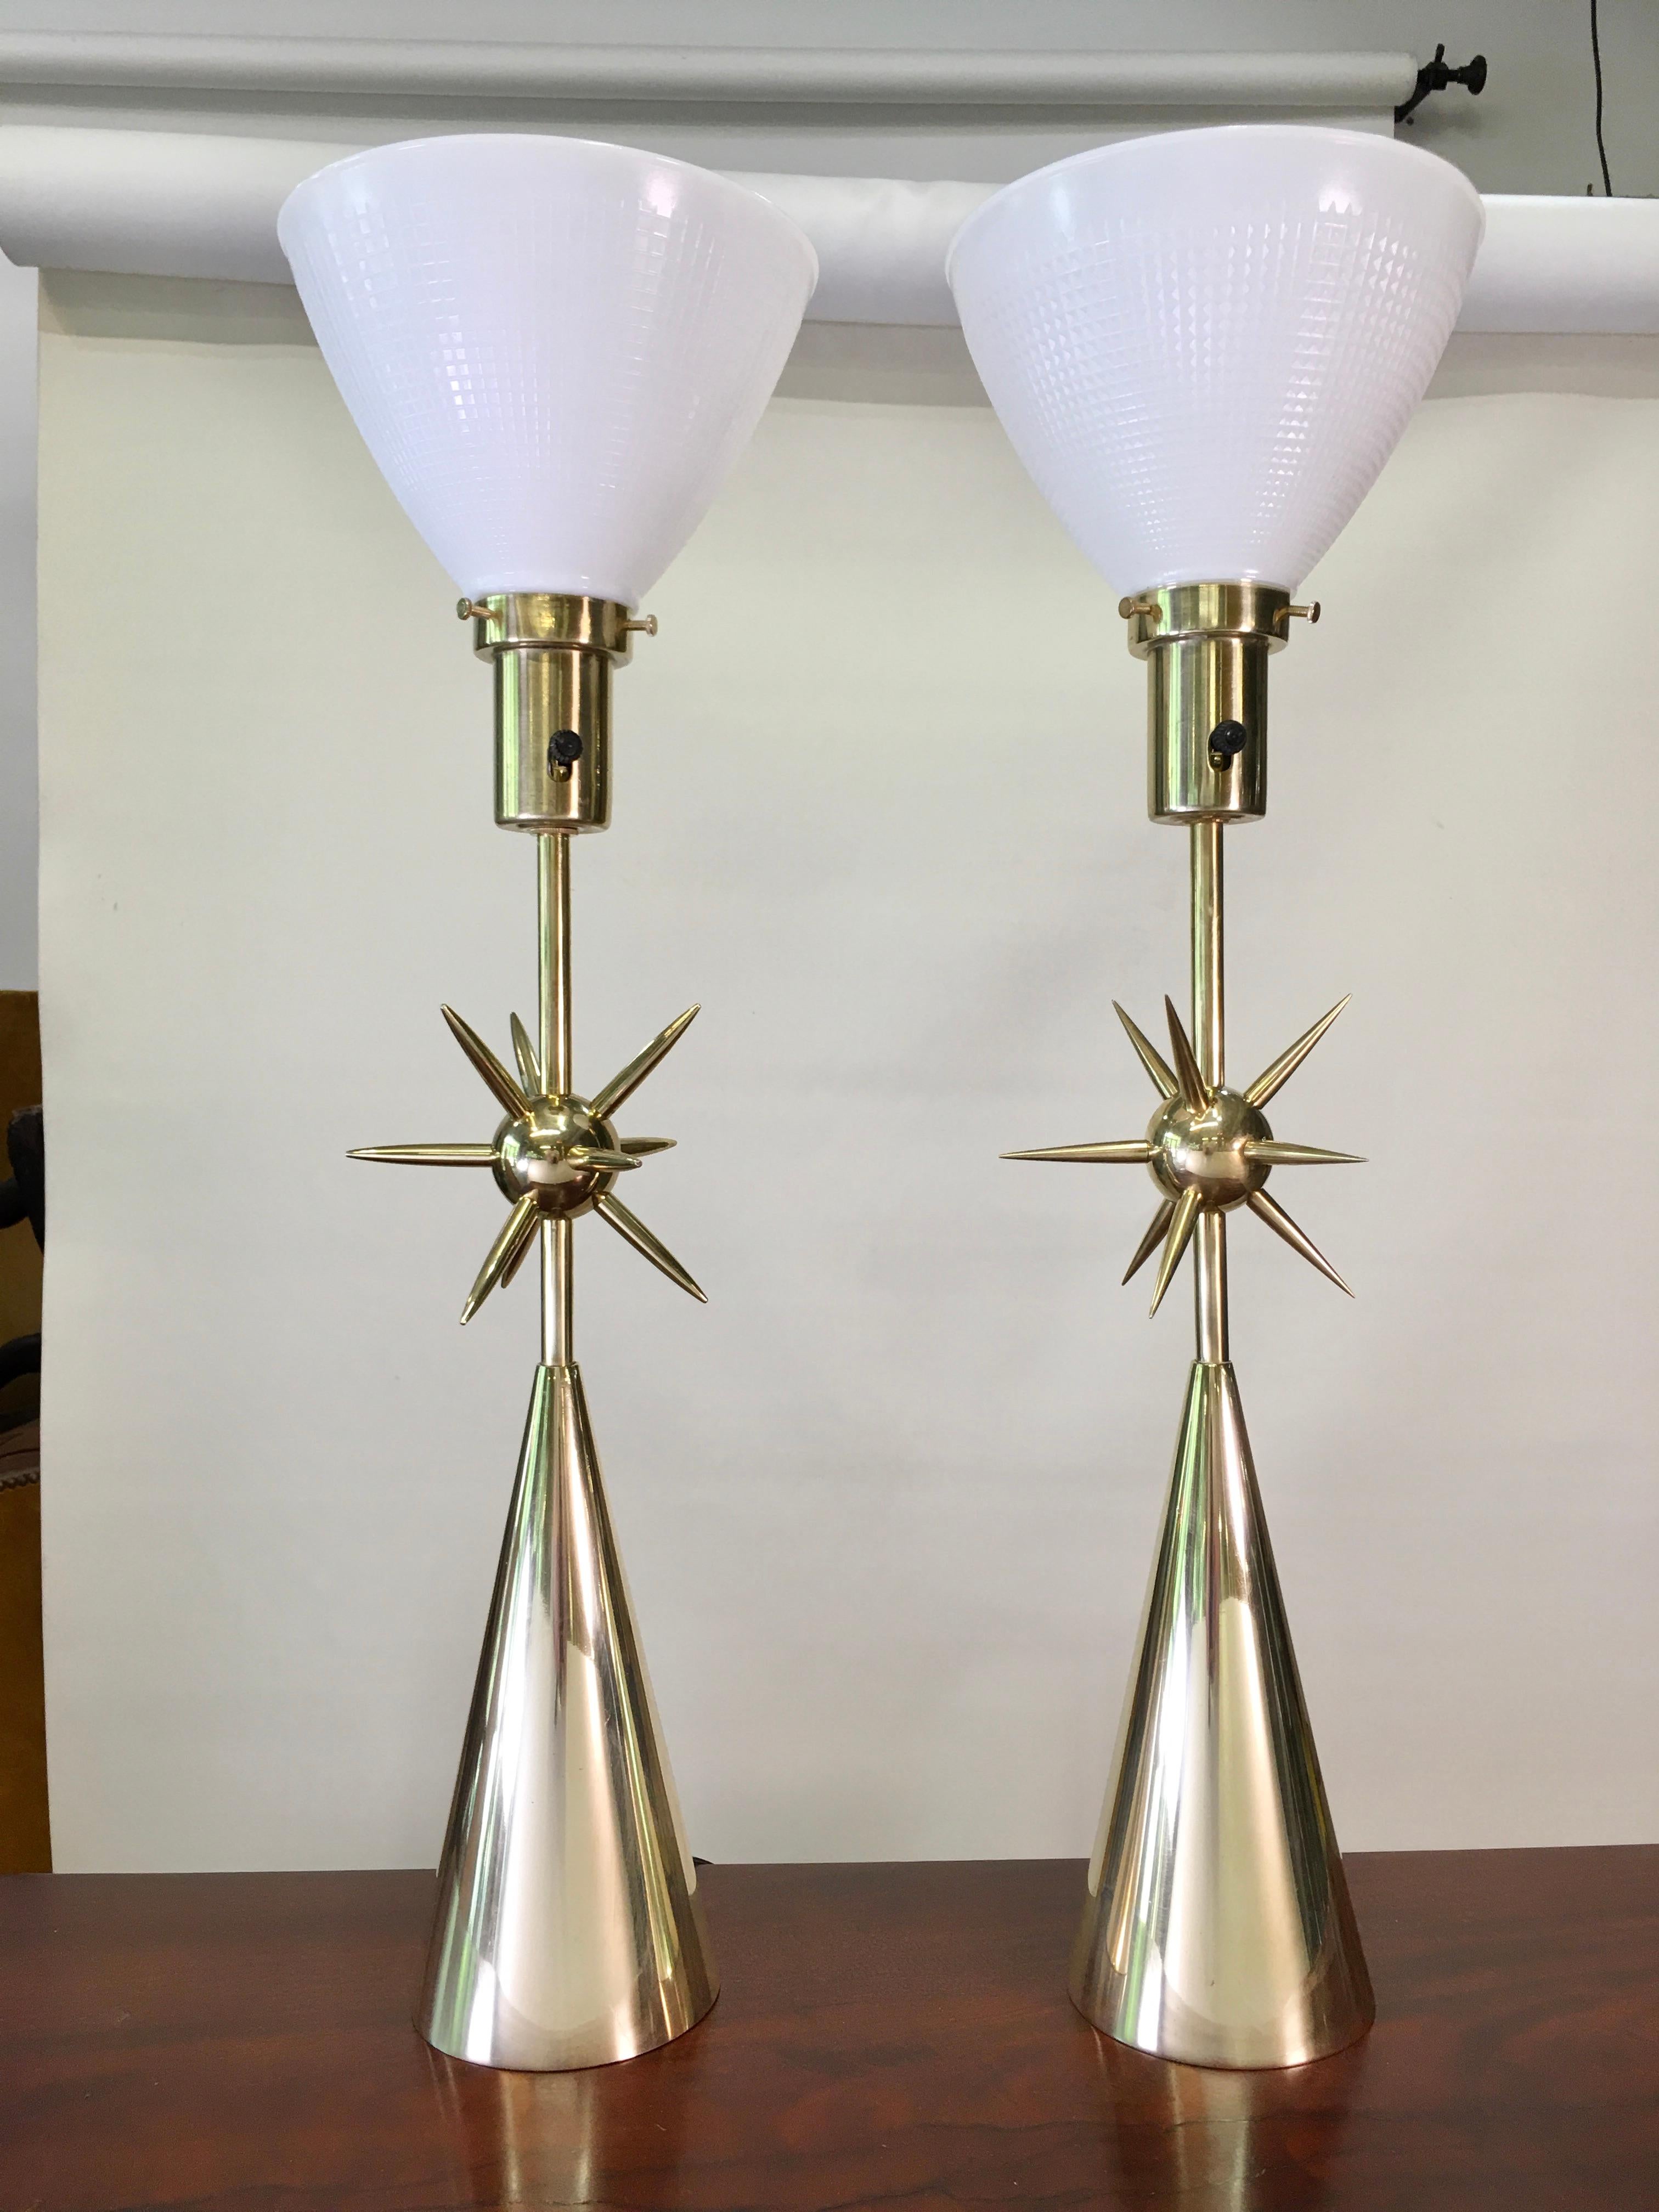 Sputnik Table Lamp - Solid Brass or Polished Nickel For Sale 1